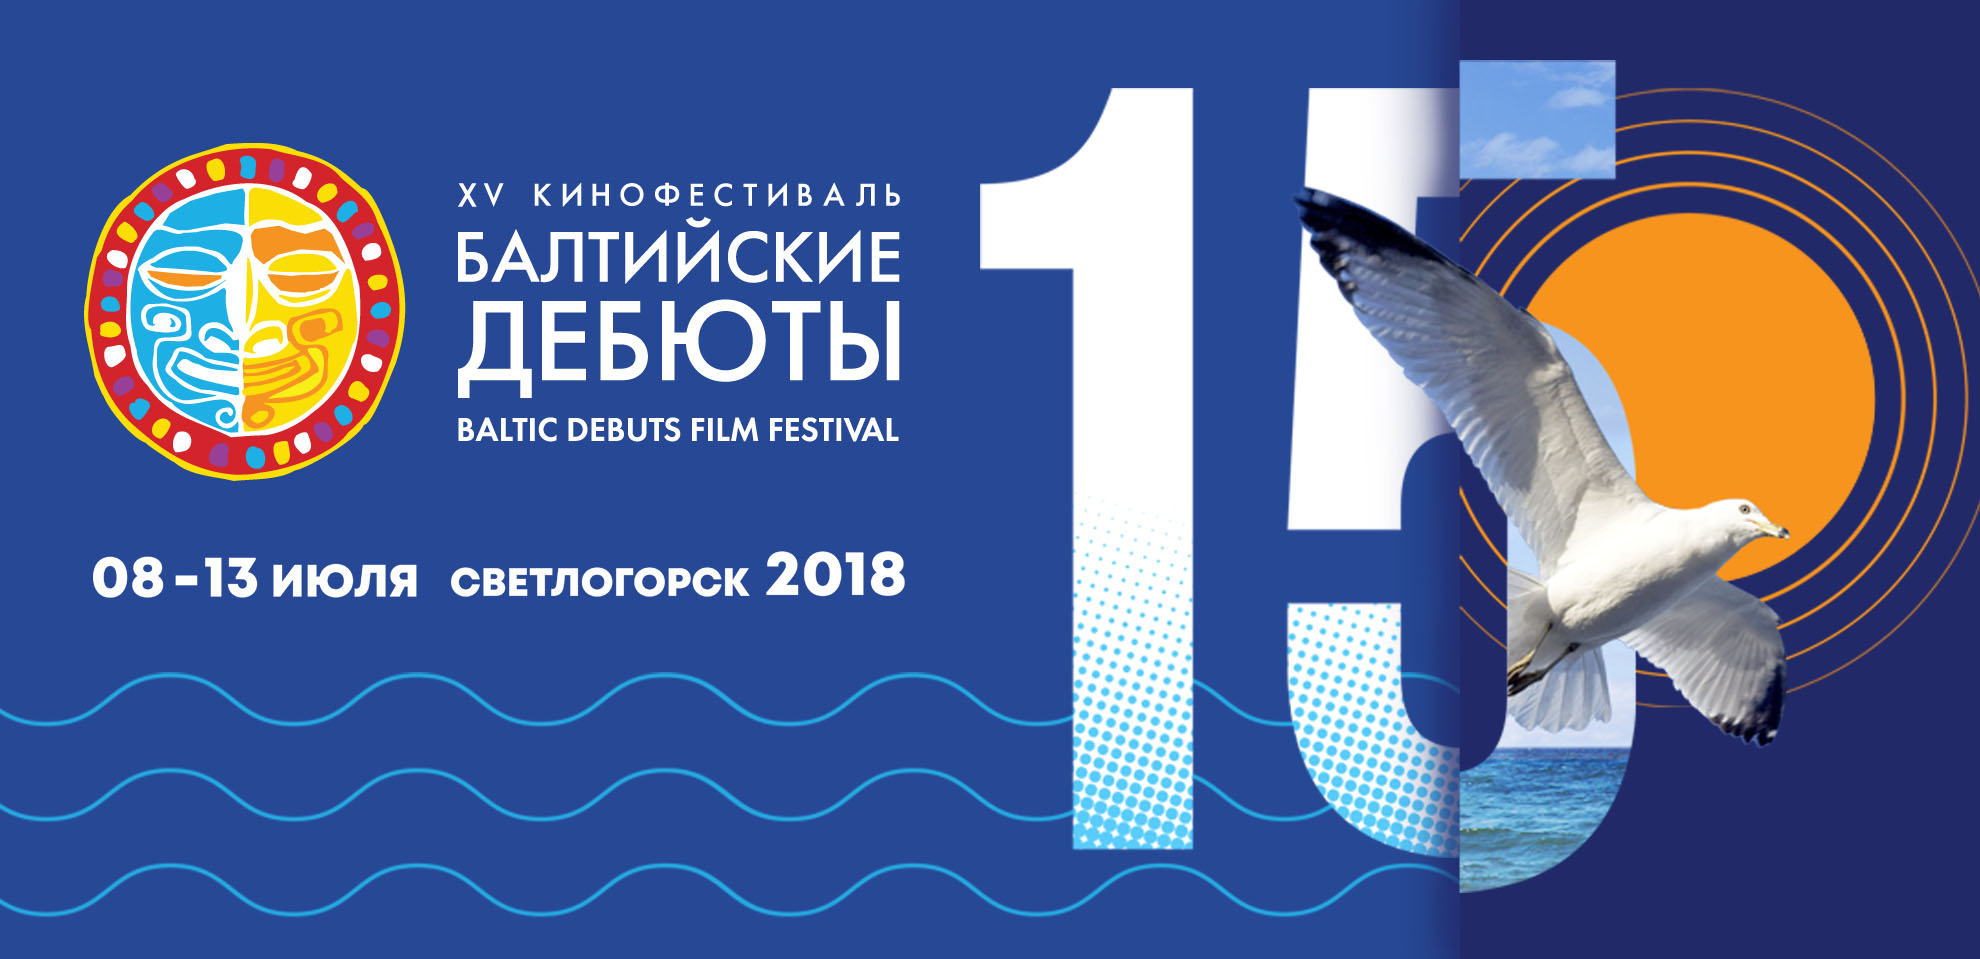 С 8 по 13 июля:  XV кинофестиваль «Балтийские дебюты»